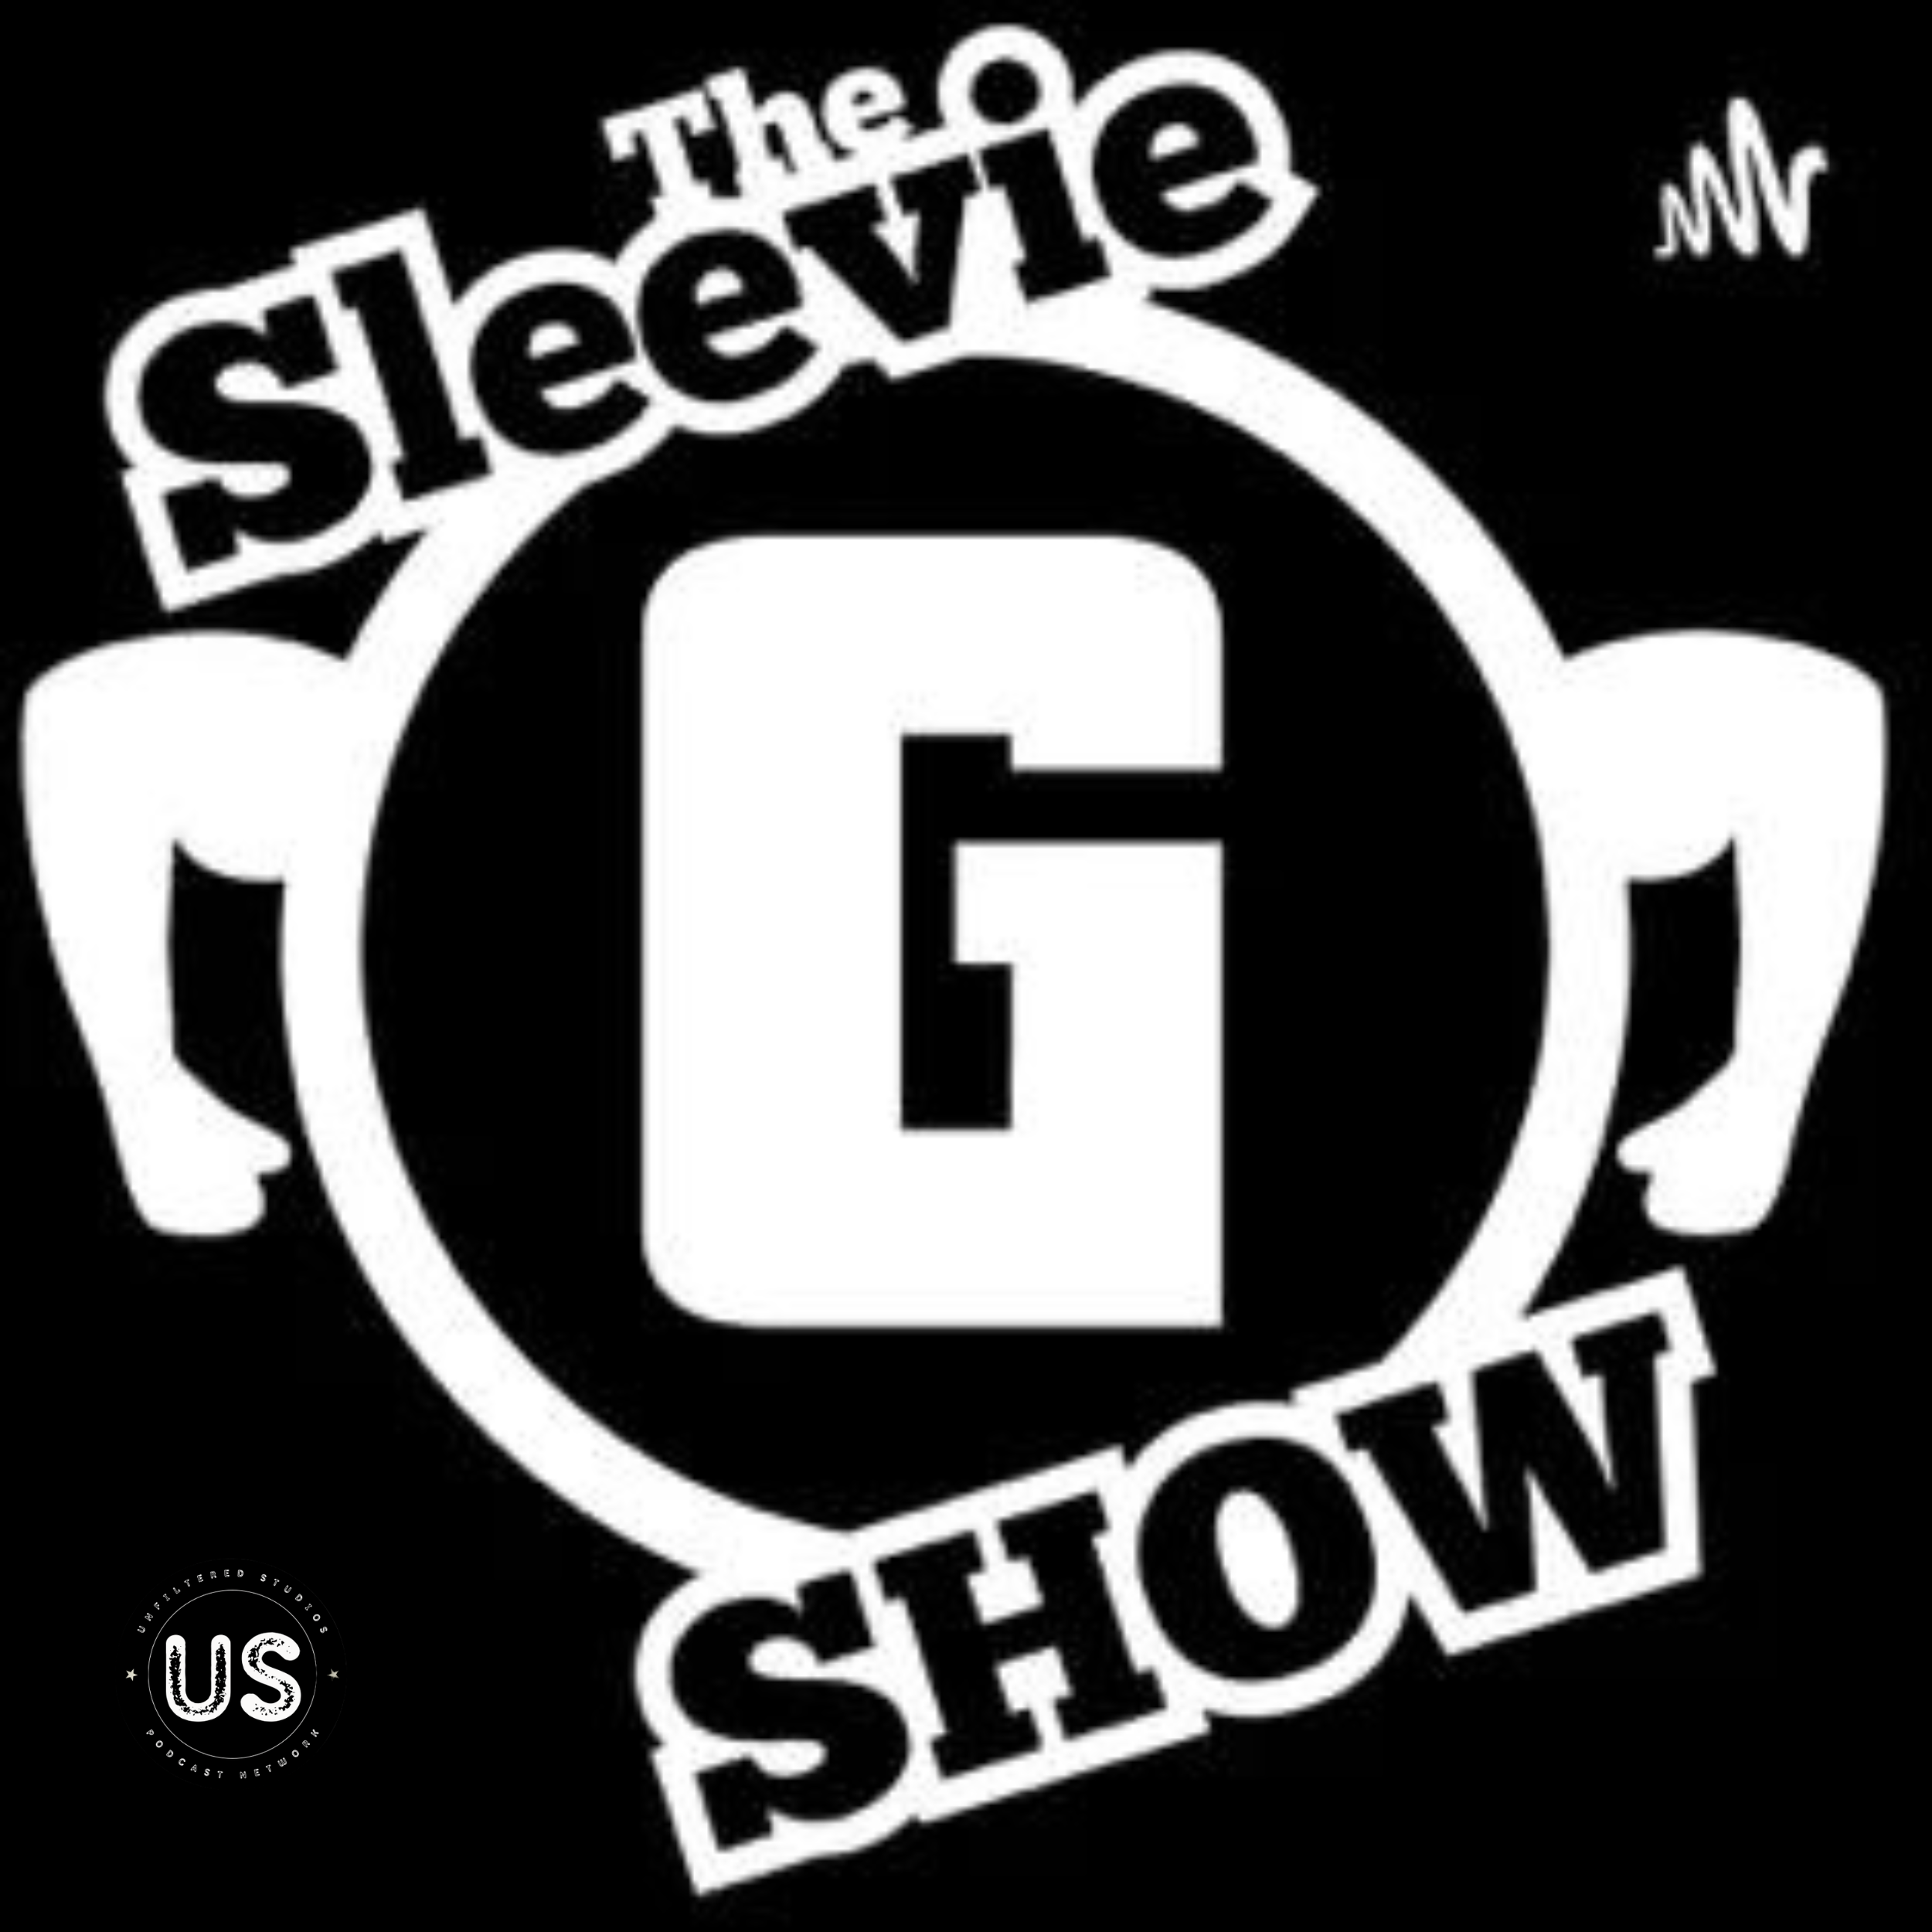 The Sleevie g show 